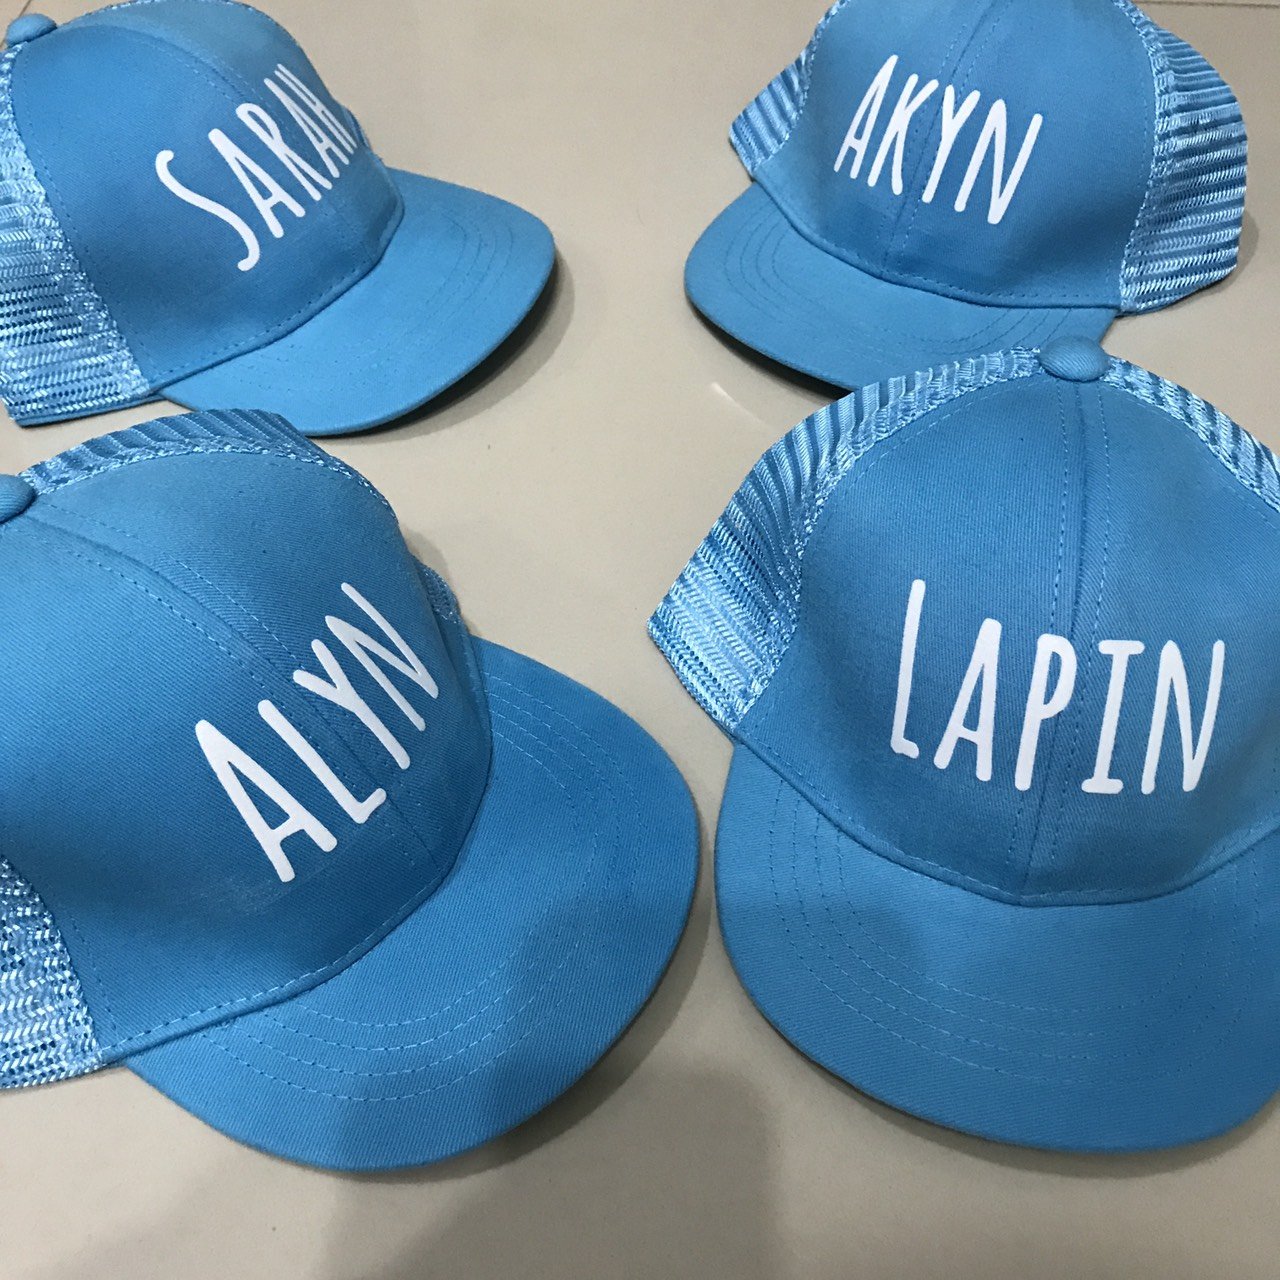 หมวก made to order สีฟ้าพิมพ์สีขาว